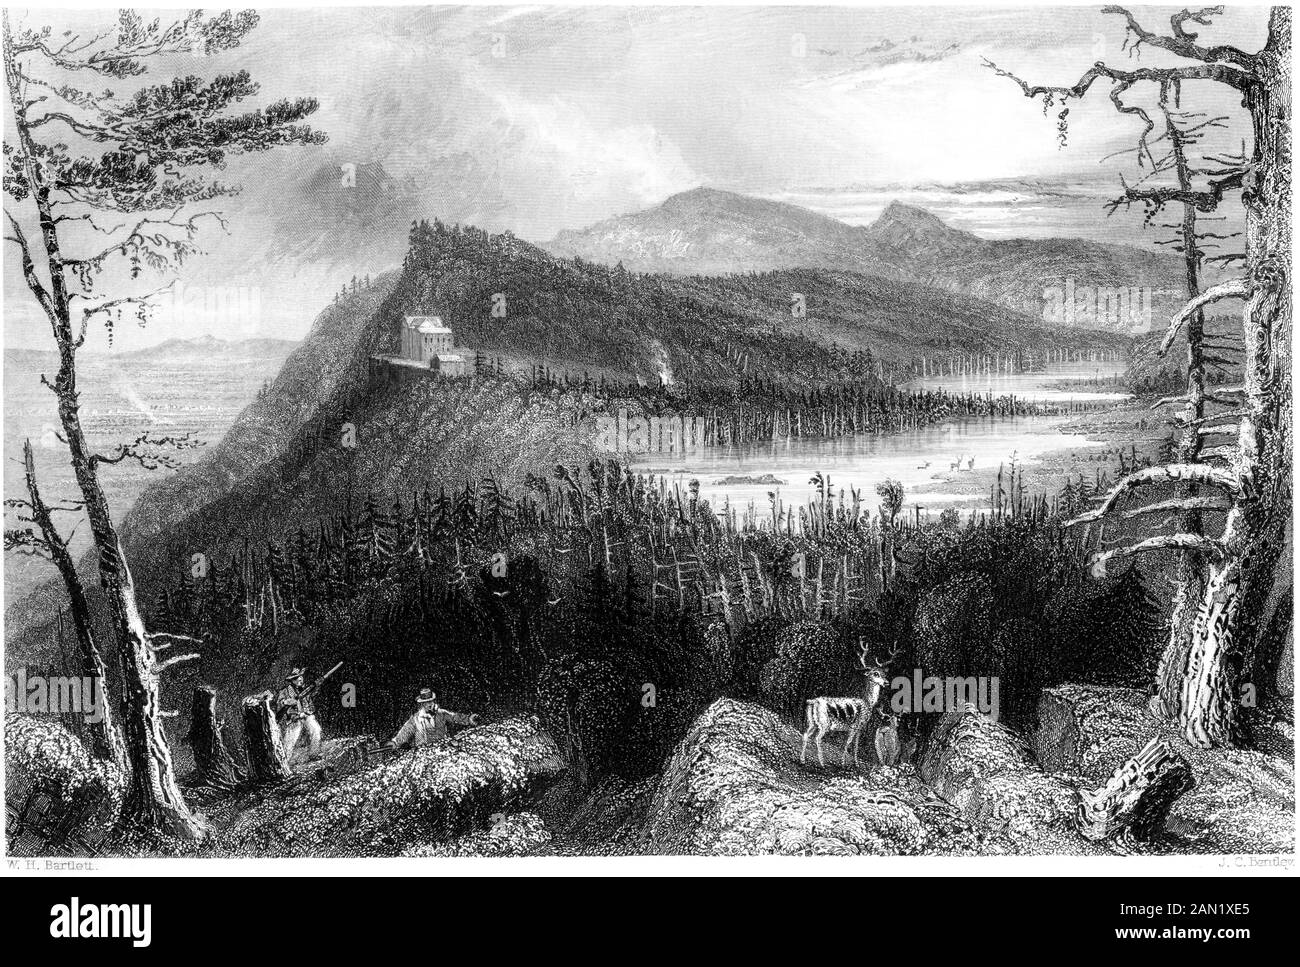 Grabado de los dos lagos y la casa de montaña en los Catskills escaneadas en alta resolución. A partir de un libro impreso en 1840. Cree libres de derechos de autor. Foto de stock